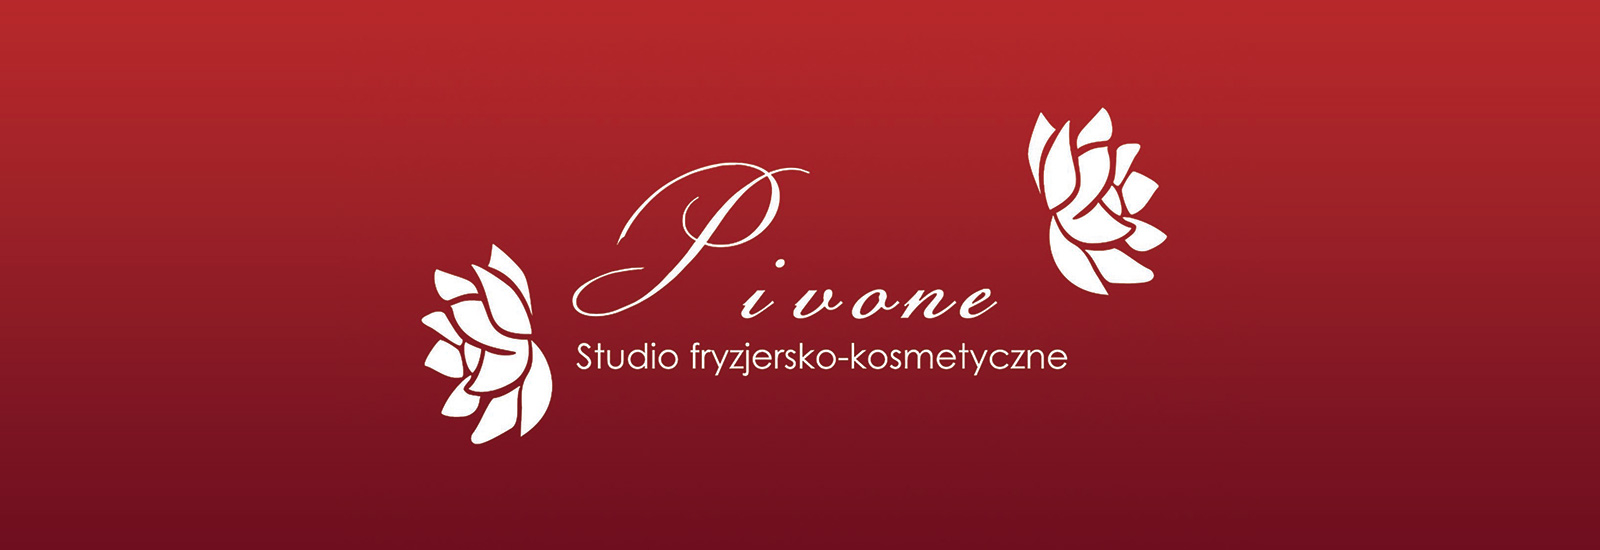 Studio Pivone , Kraków, pivone-studio-fryzjersko-kosmetyczne